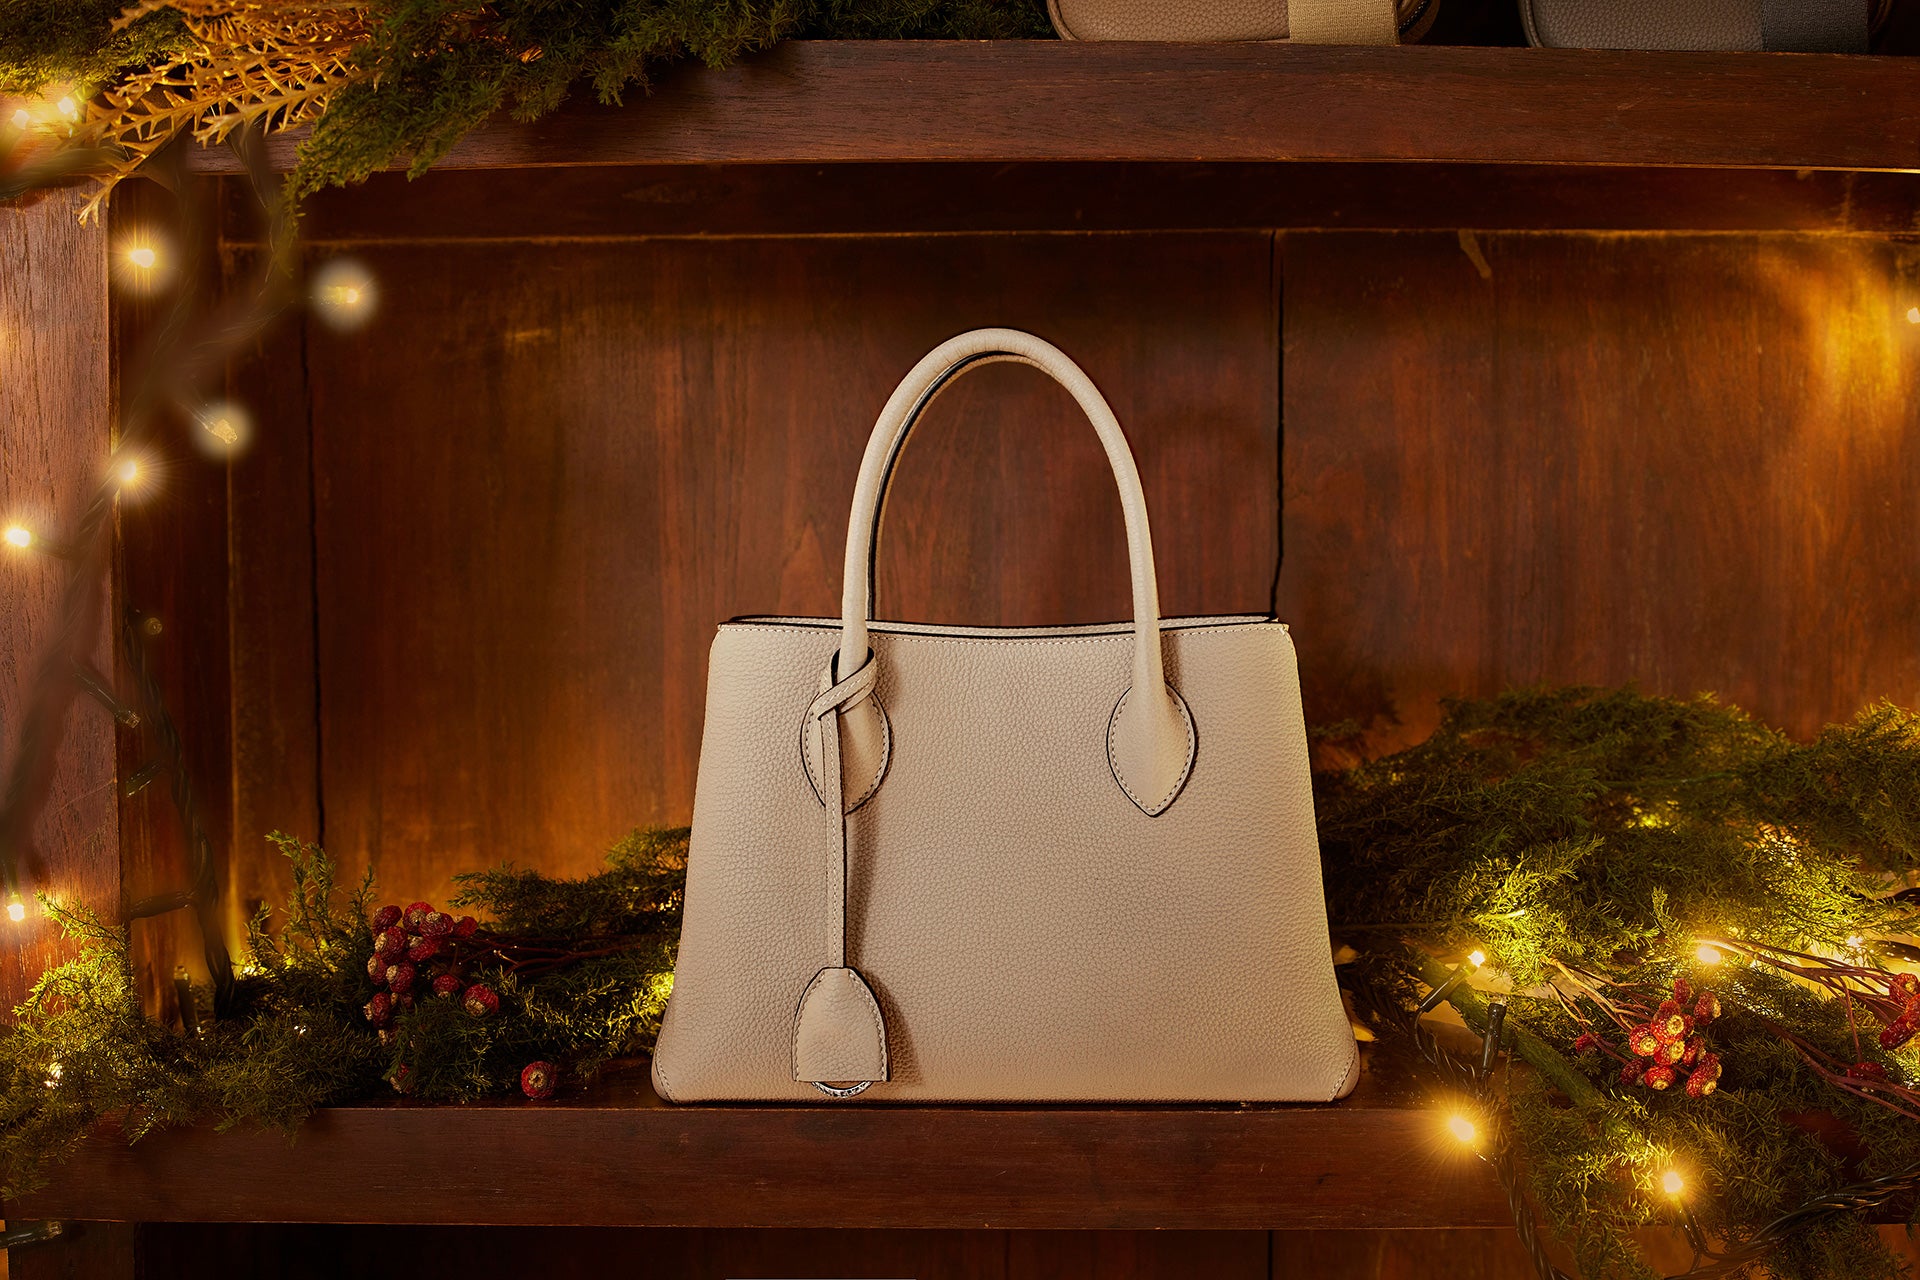 Elegant BONAVENTURA-håndtaske på et festligt pyntet julebord.